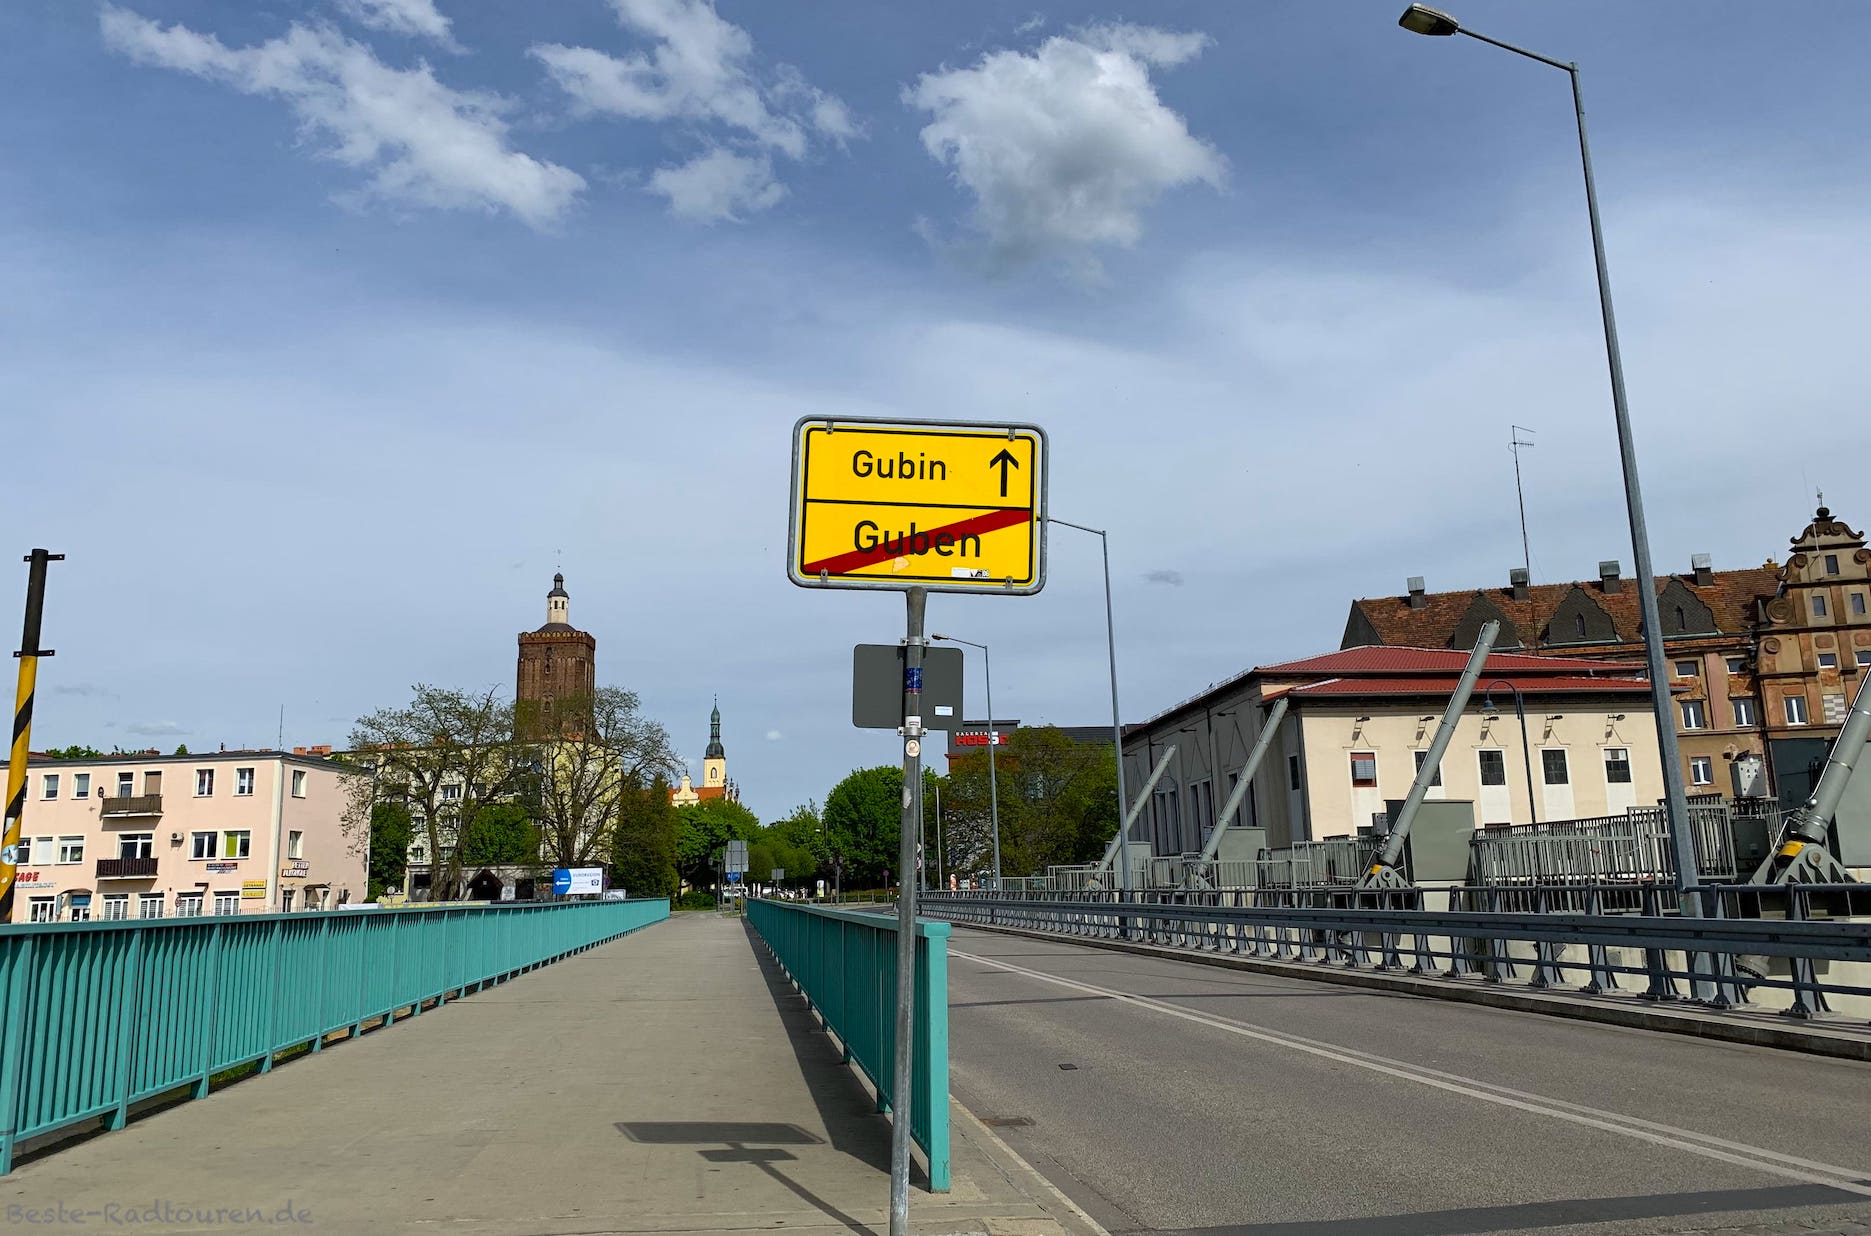 Foto vom Oder-Neiße-Radweg aus: Brücke auf der Grenze zwischen Guben und Gubin, Ortsschild